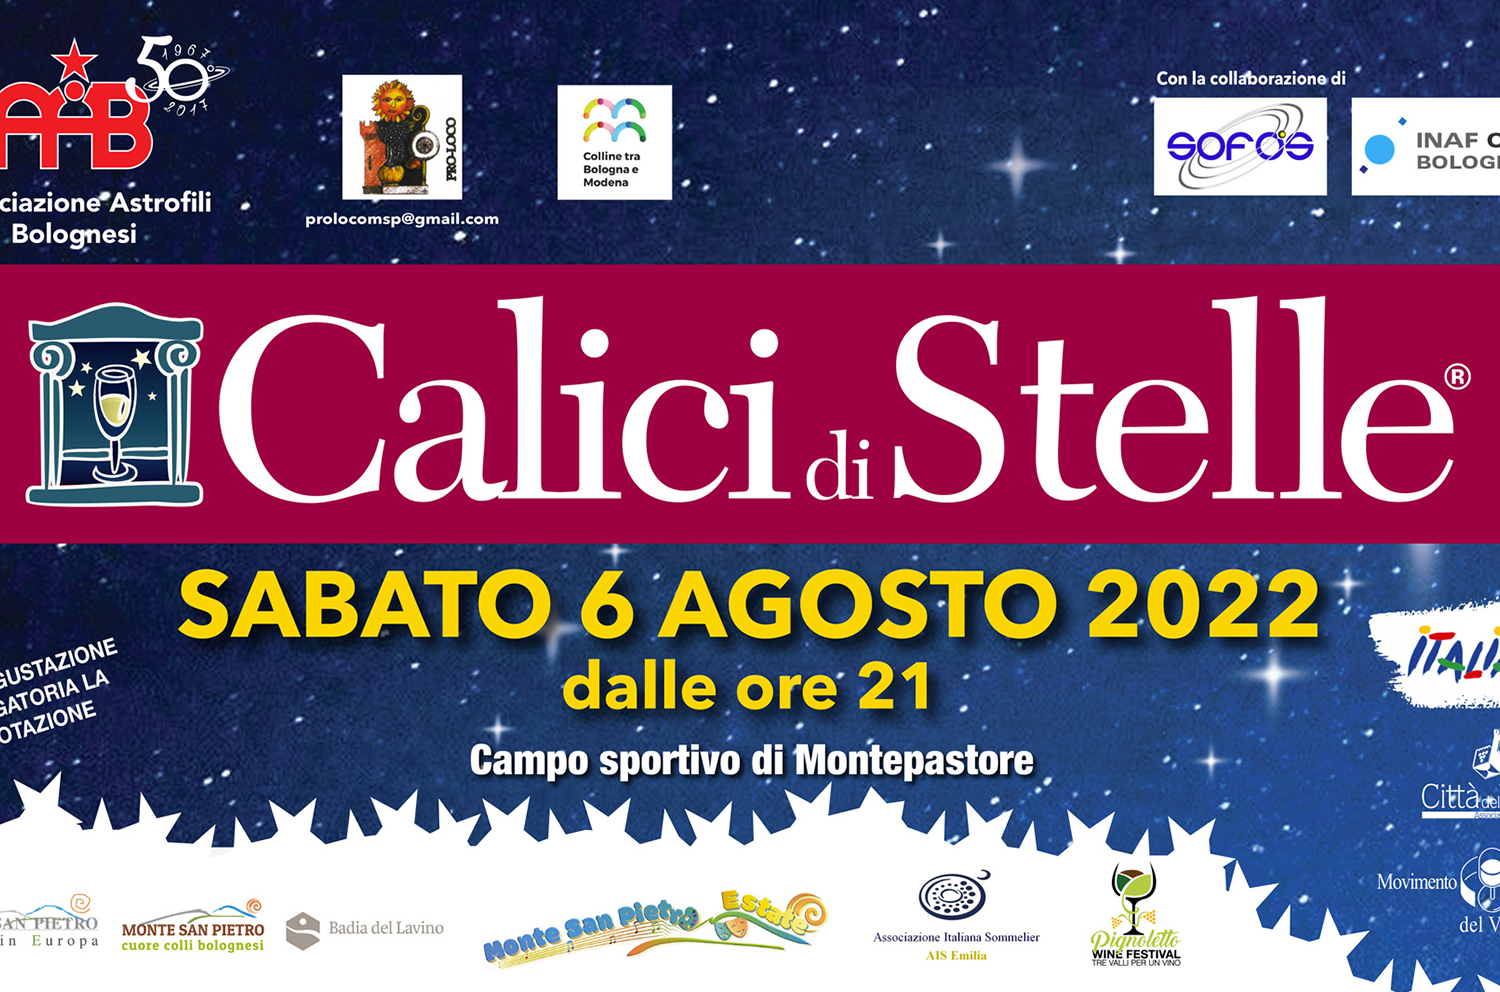 ProLoco Monte San Pietro, AAB - Associazione Astrofili Bolognesi